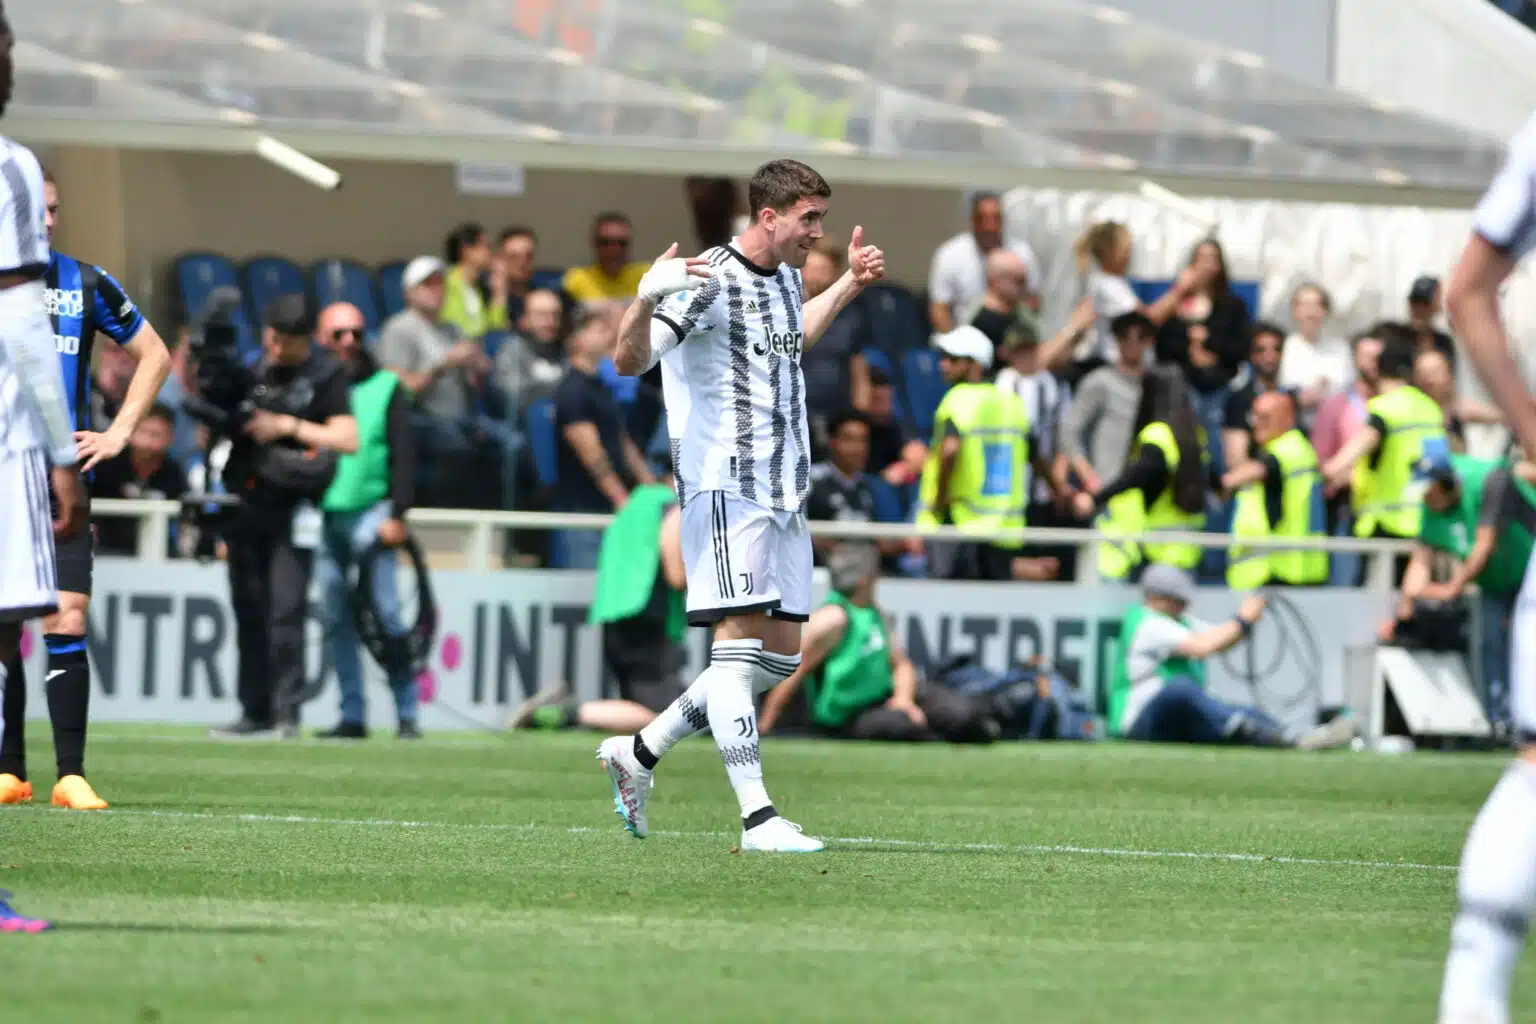 Dusan Vlahovic, Juventus